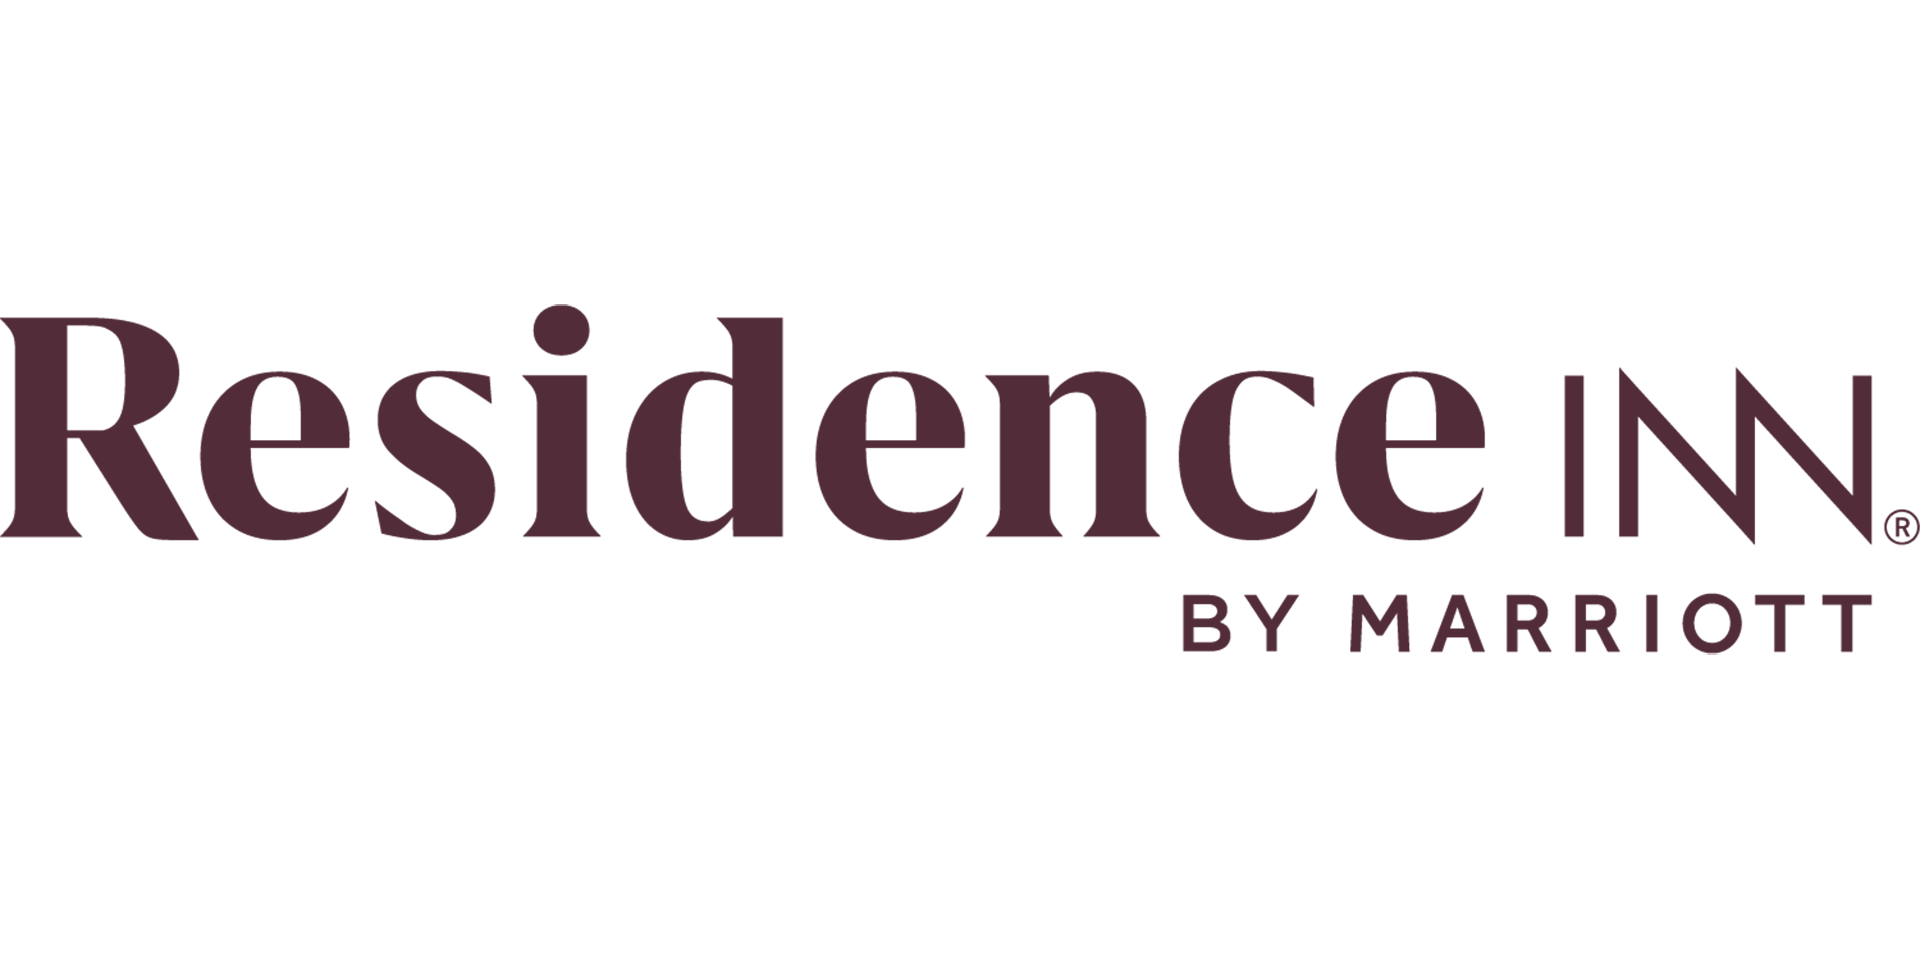 Inn Logo - Residence Inn by Marriott | Marriott News Center